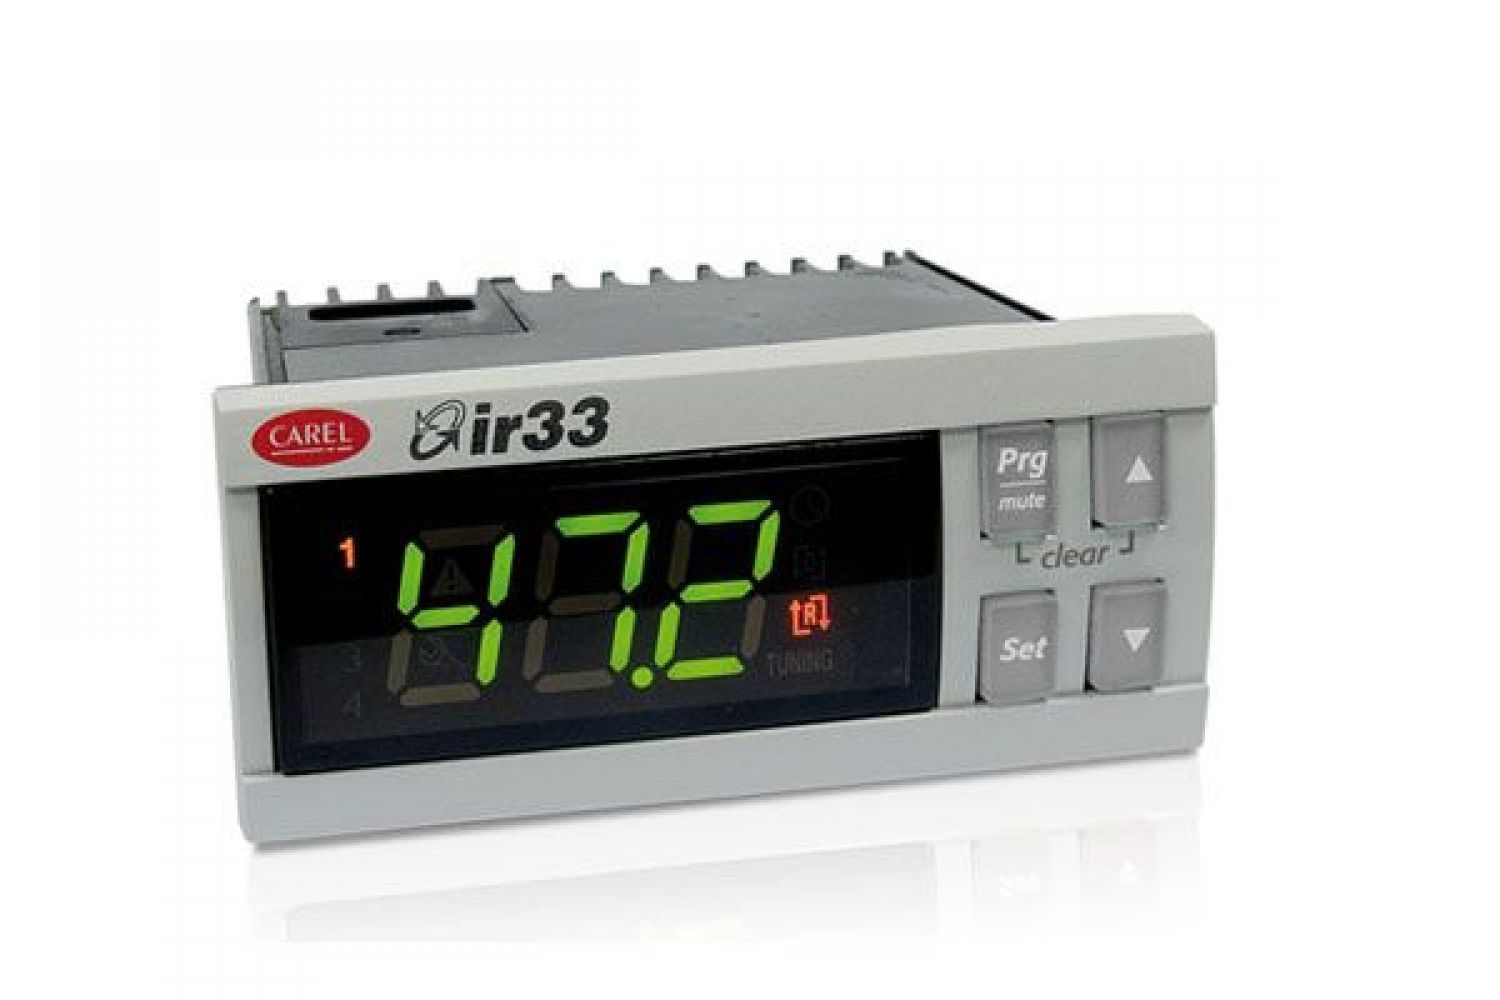 IR33D7HR20 Параметрический контроллер ir33, монтаж в панель, 2NTC/PTC/PT1000, 1 твердотельное реле, звуковой сигнал, ИК-приемник, 115-230VAC